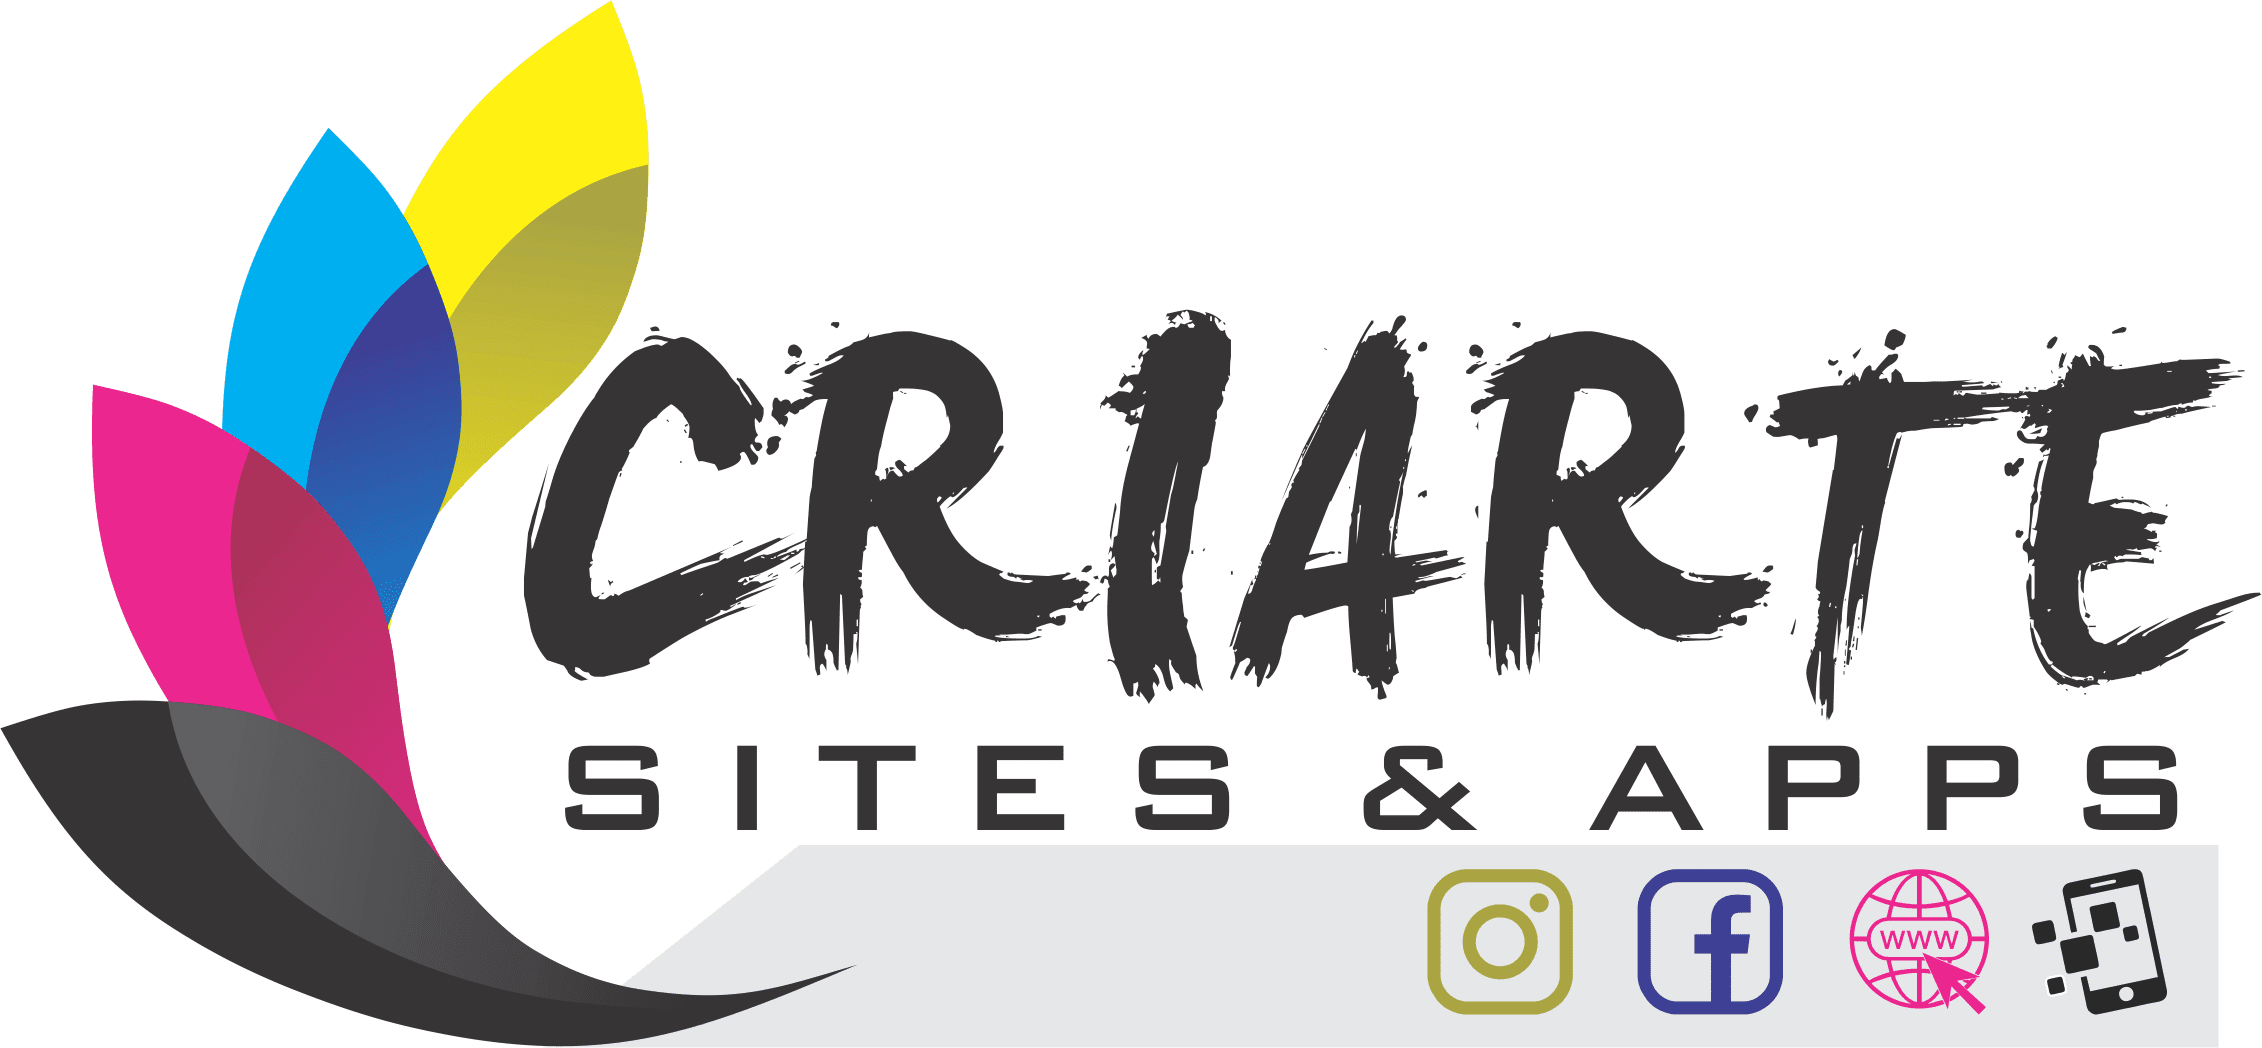 Criarte Sites & Apps